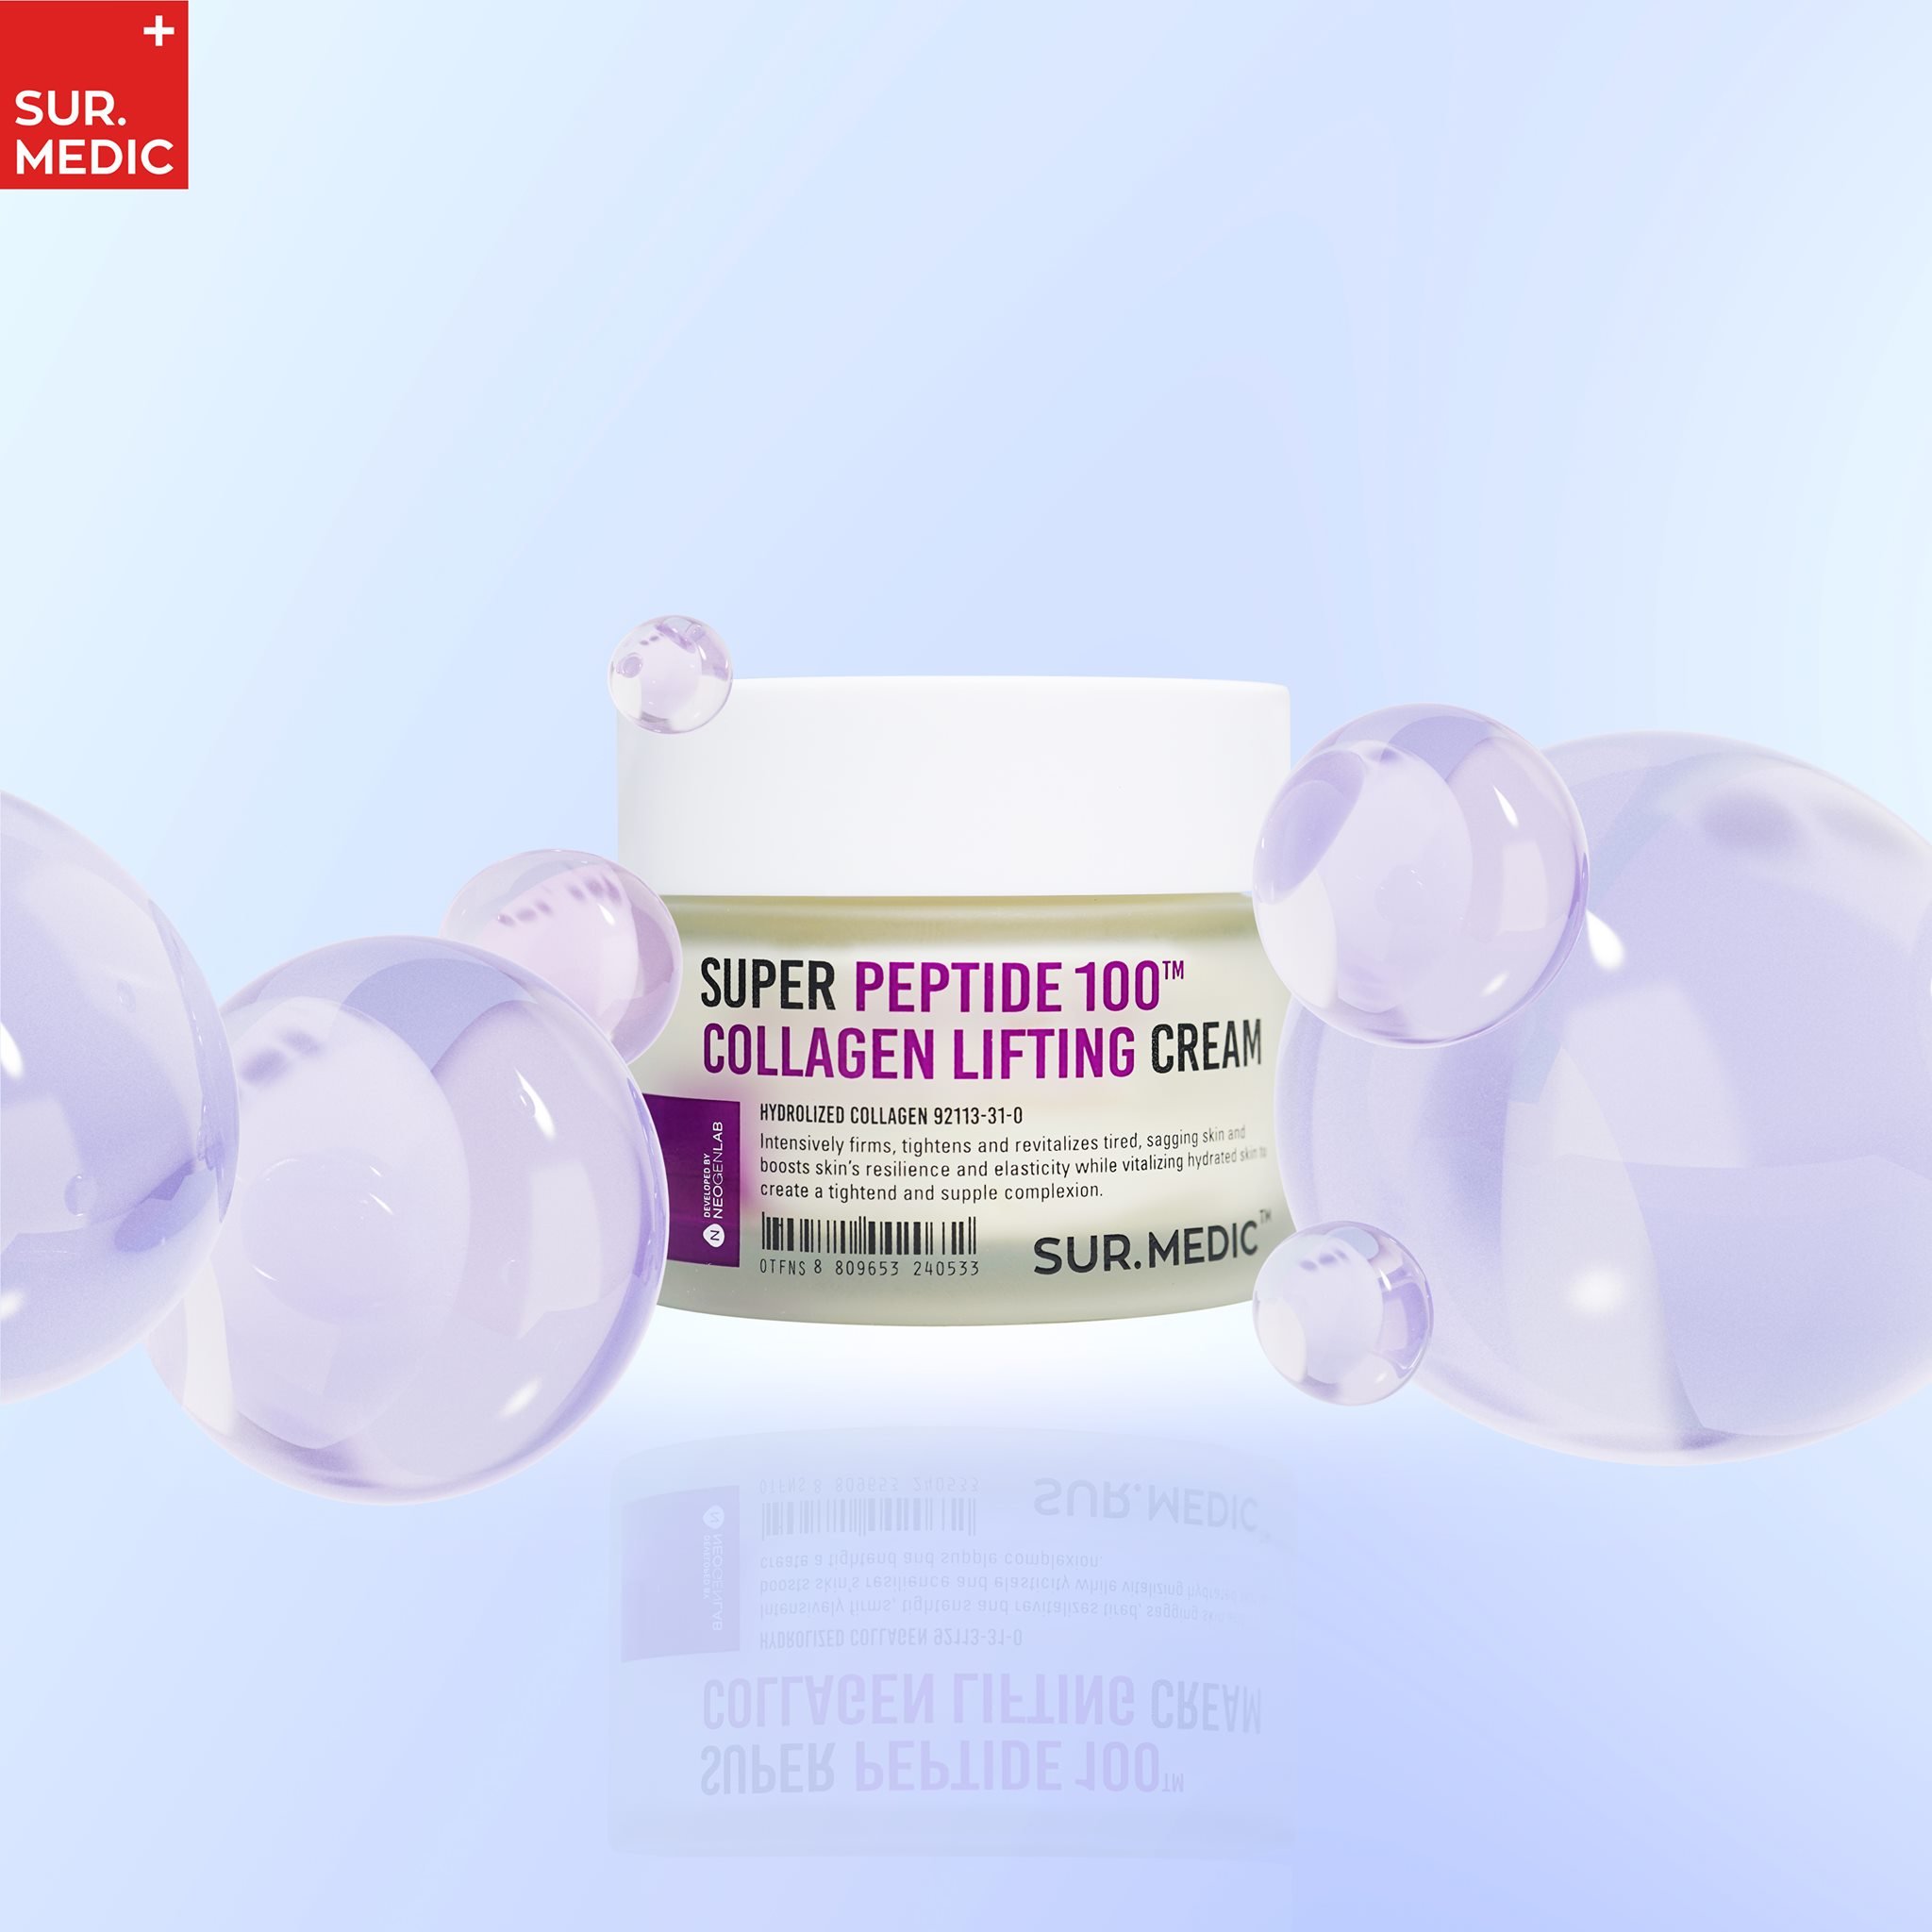 Kem dưỡng phục hồi trẻ hóa làn da Sur.medic+ Super Peptide 100tm Collagen Lifting Cream 50ml + Tặng Kèm 1 băng đô tai mèo (Màu Ngẫu Nhiên)